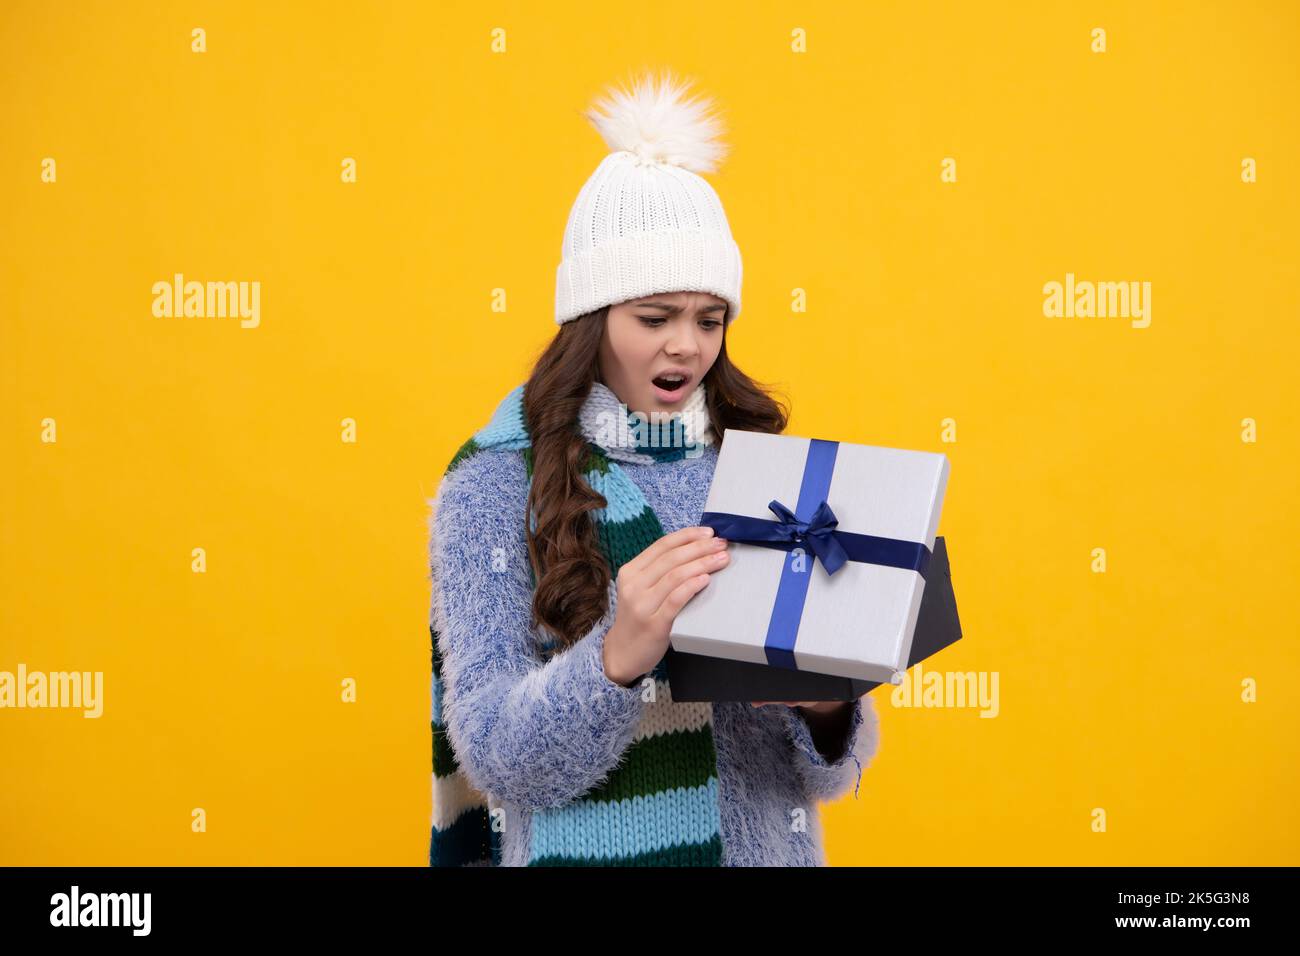 Porträt eines Teenagers Kind Mädchen 12, 13, 14 Jahre alt mit  Weihnachts-Geschenkbox. Teen geben Geburtstagsgeschenk. Wütend Teenager  Mädchen, aufgeregt und unglücklich Stockfotografie - Alamy